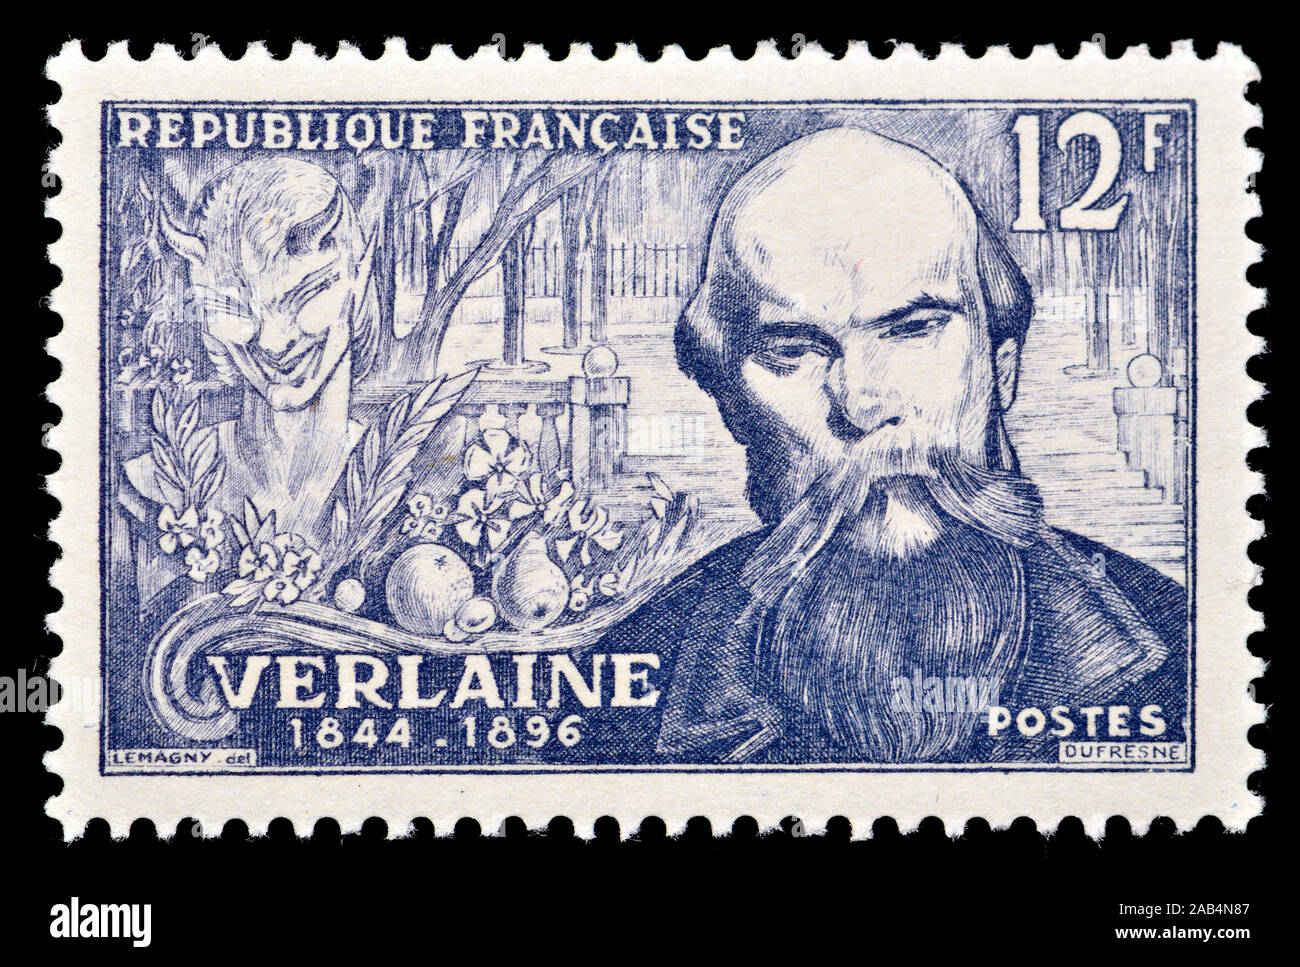 Französische Briefmarke (1951): paul-marie Verlaine (1844-1896), französischer Dichter mit der Dekadenten Bewegung verbunden. Stockfoto